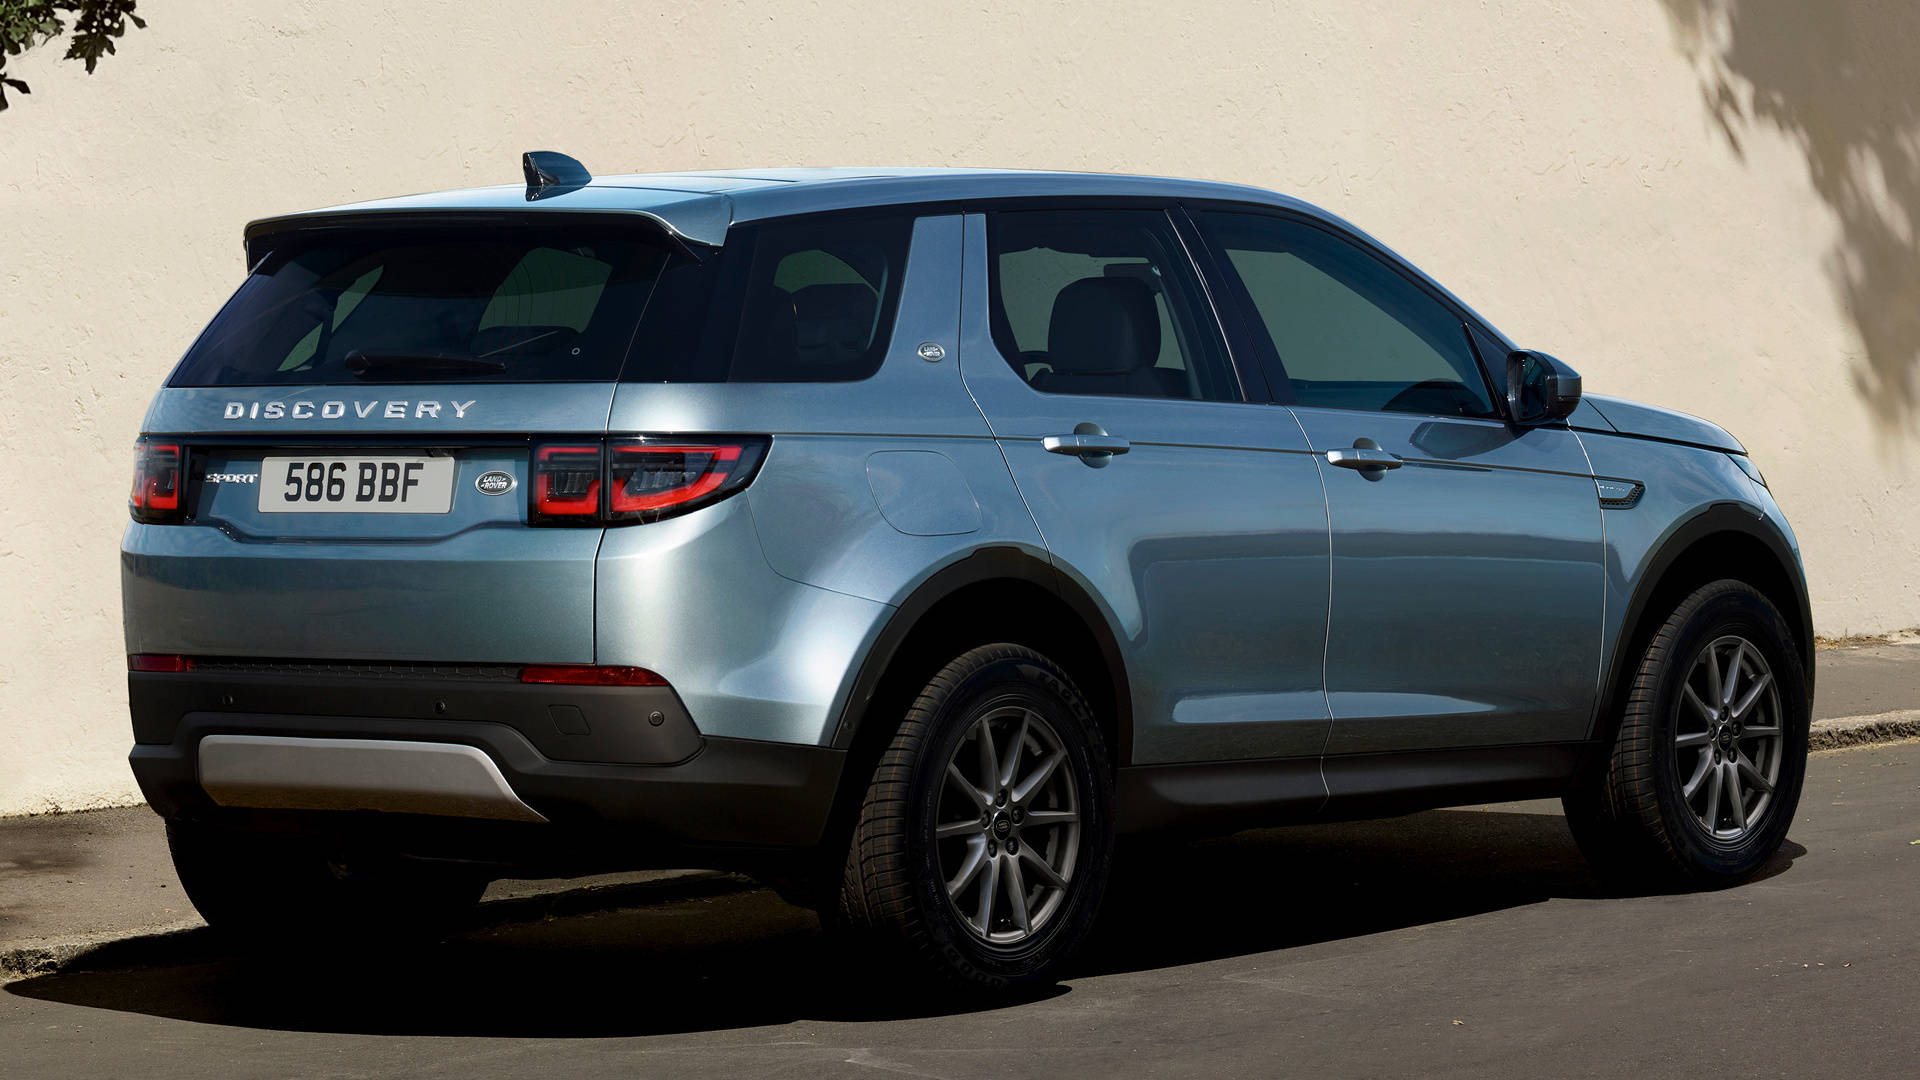 Fondode Pantalla Para Iphone De La Discovery Land Rover 2020. Fondo de pantalla